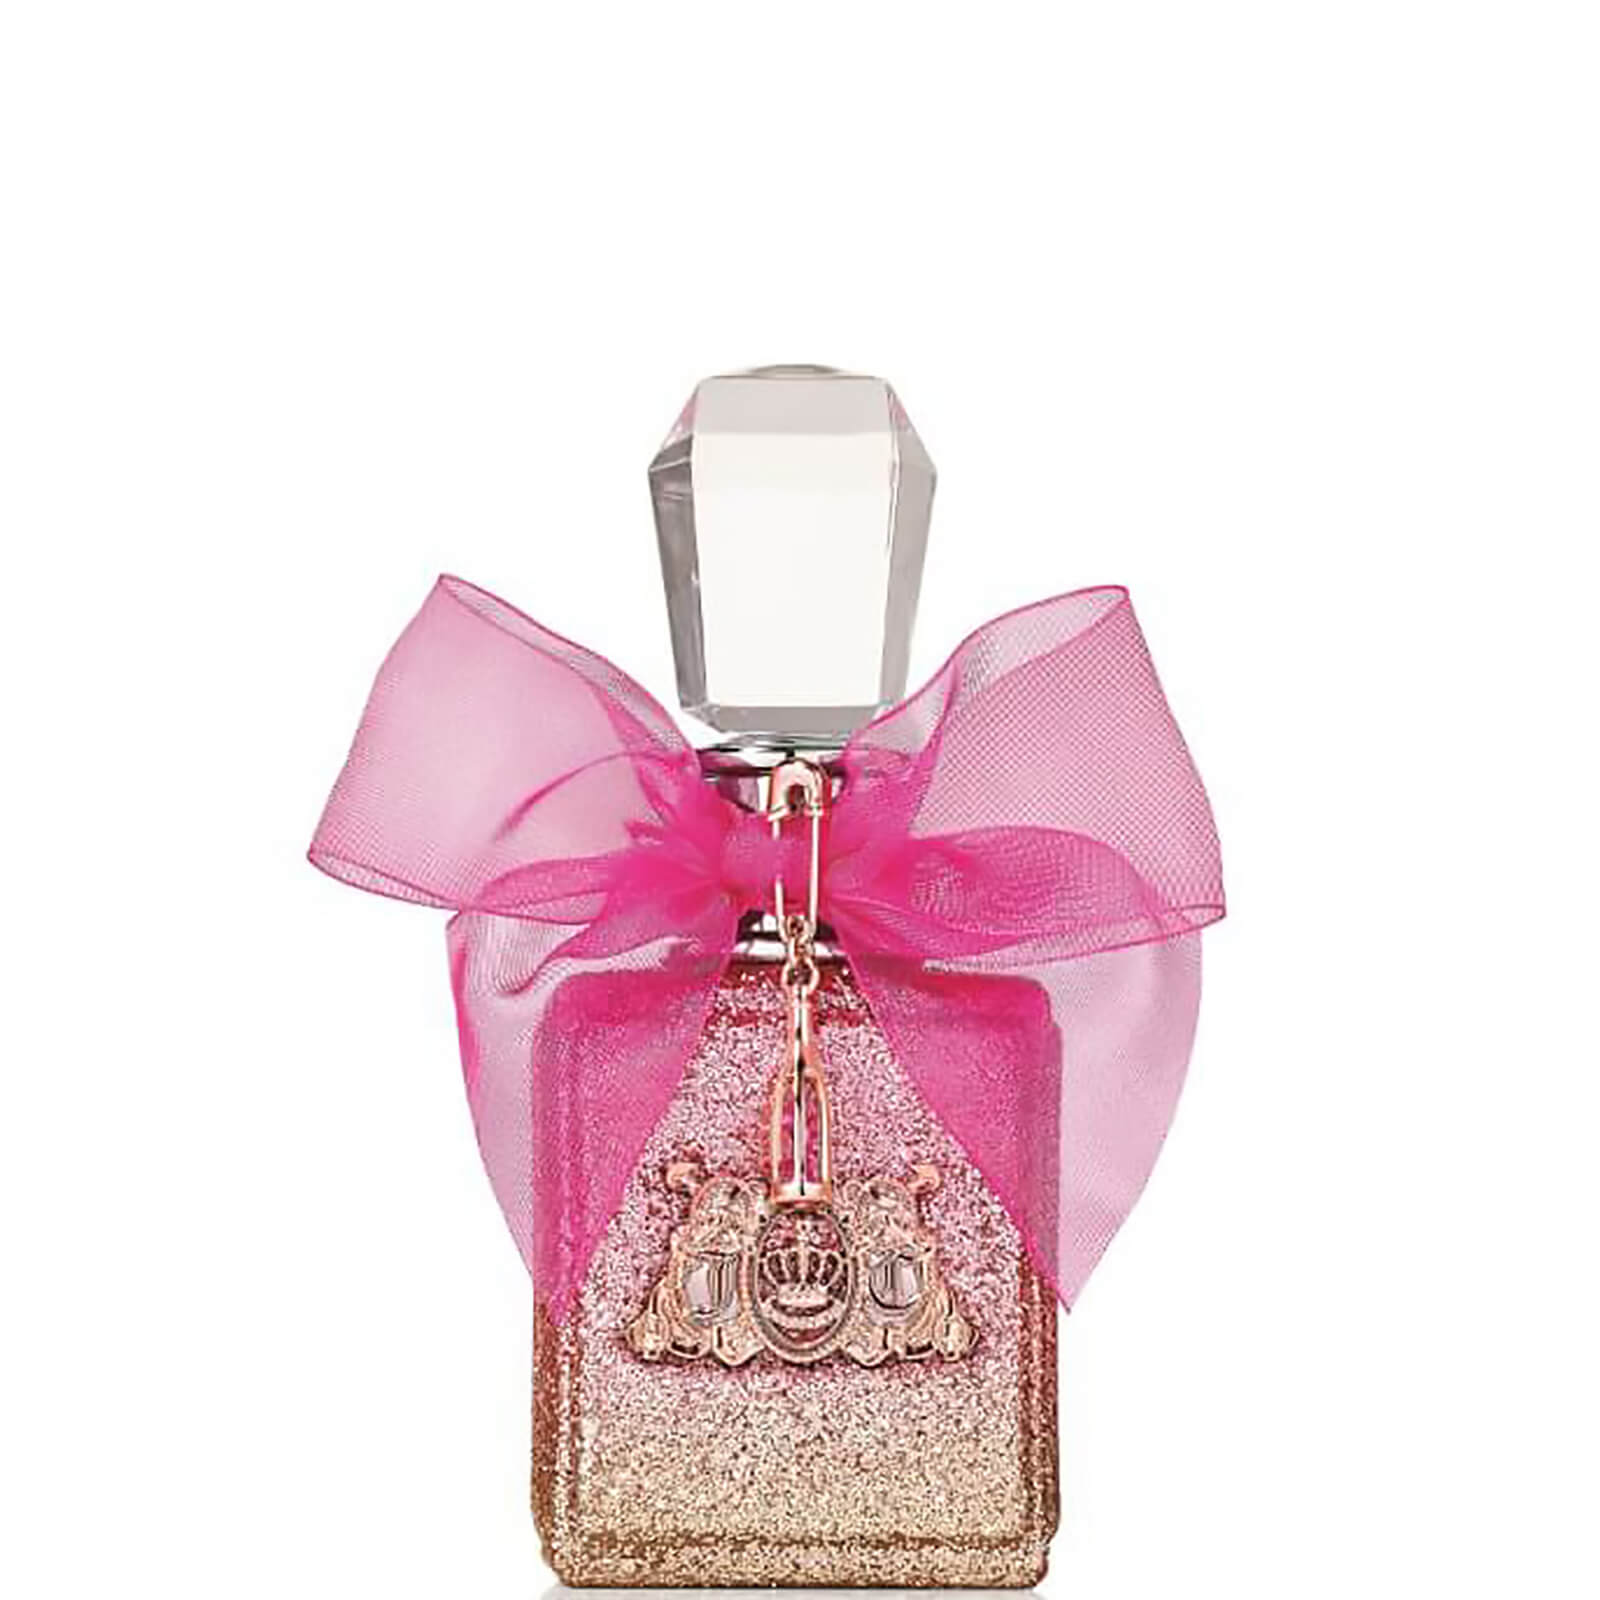 Photos - Women's Fragrance Juicy Couture Viva La Juicy Rosé Eau de Parfum - 50ml A0131098 